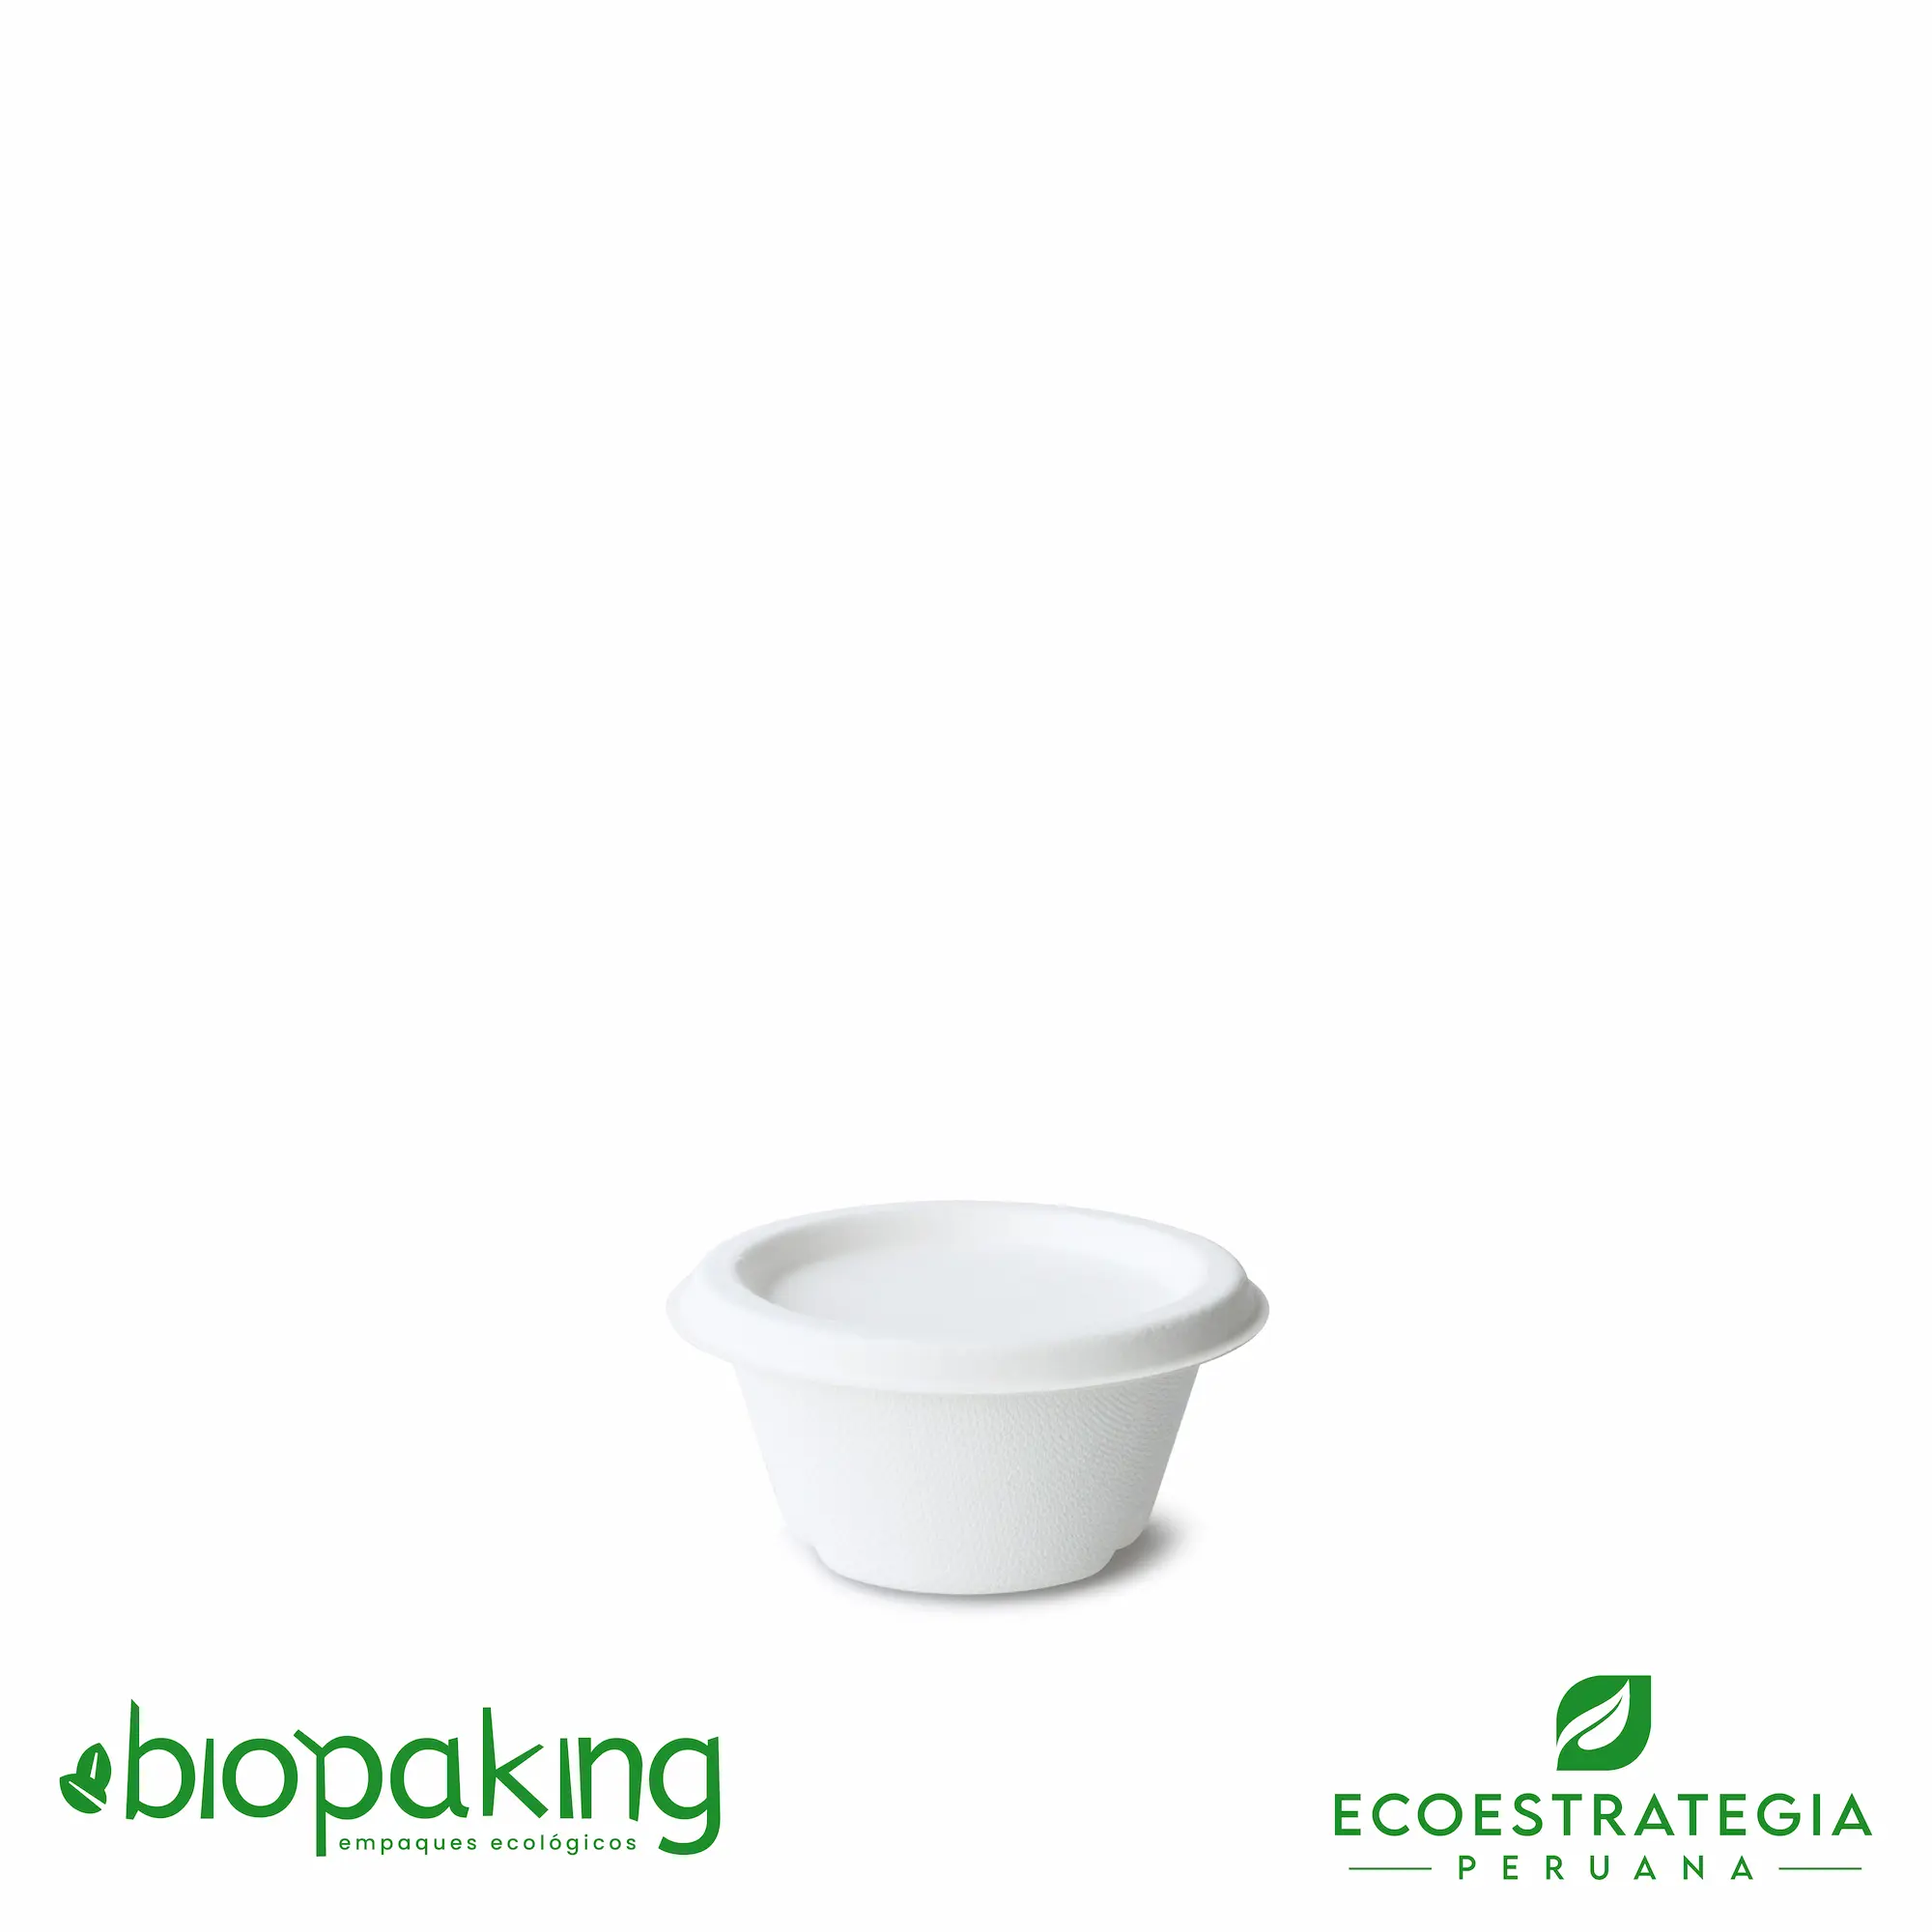 Este salsero de 2 oz es un producto de materiales biodegradables, hecho a base de fibra de caña de azúcar. Cotiza envases, empaques y pirotines para comidas